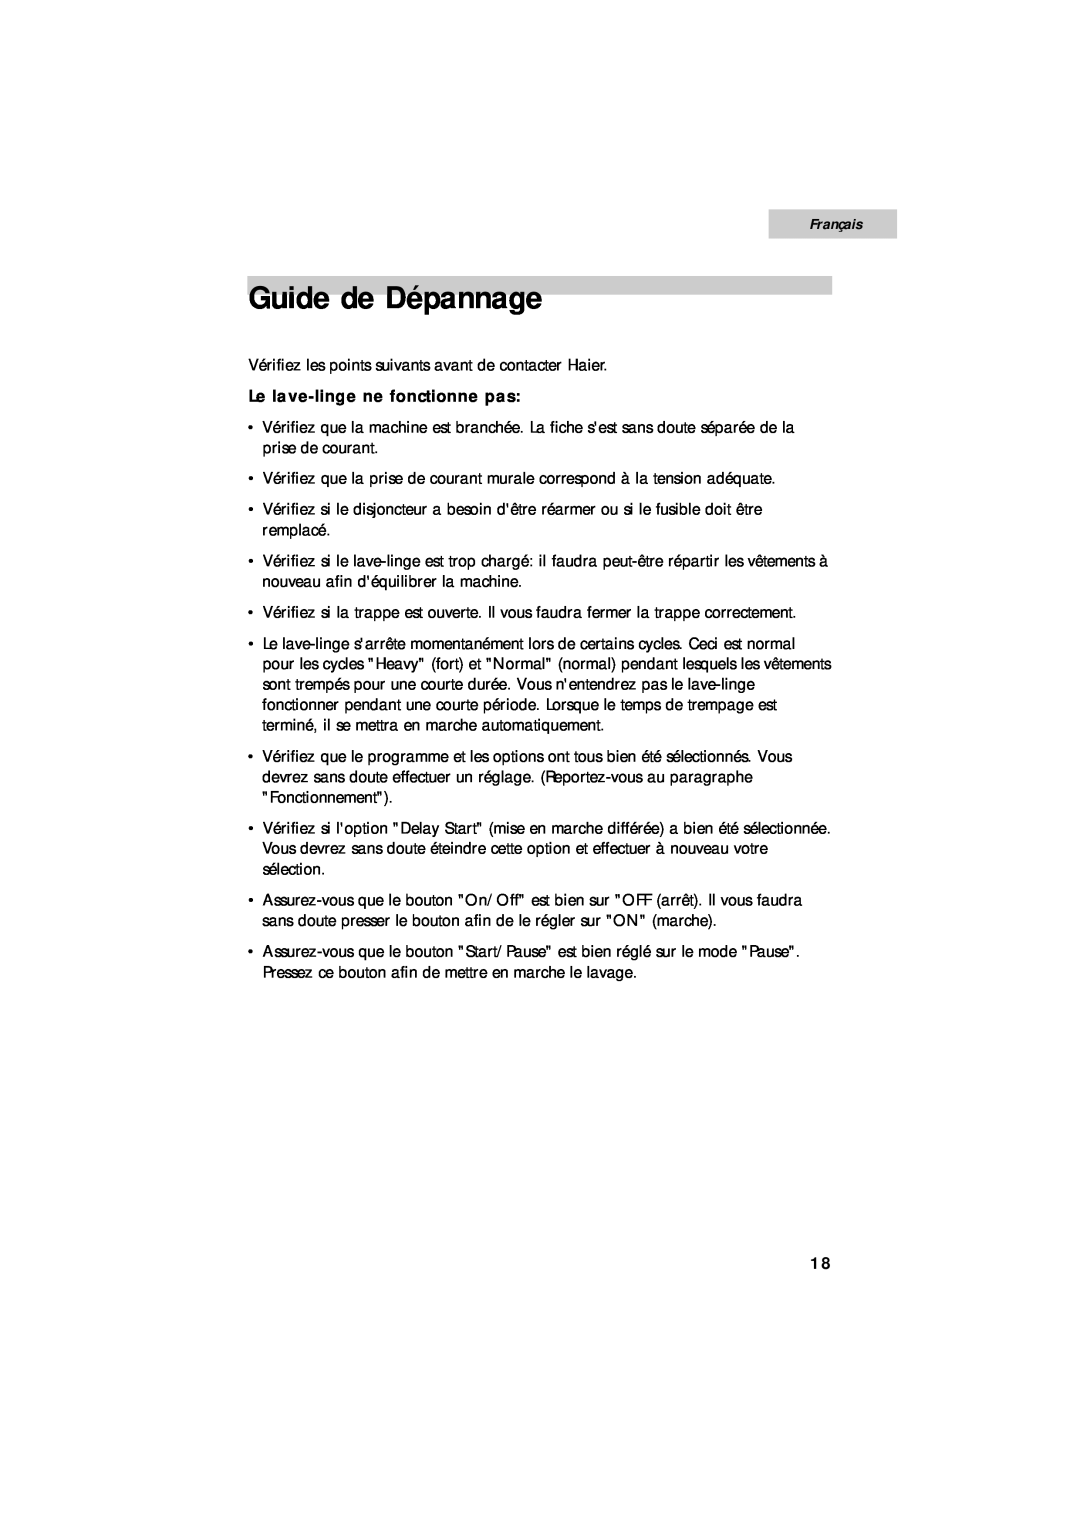 Summit SPW1200P user manual Guide de Dépannage, Français, Le lave-linge ne fonctionne pas 